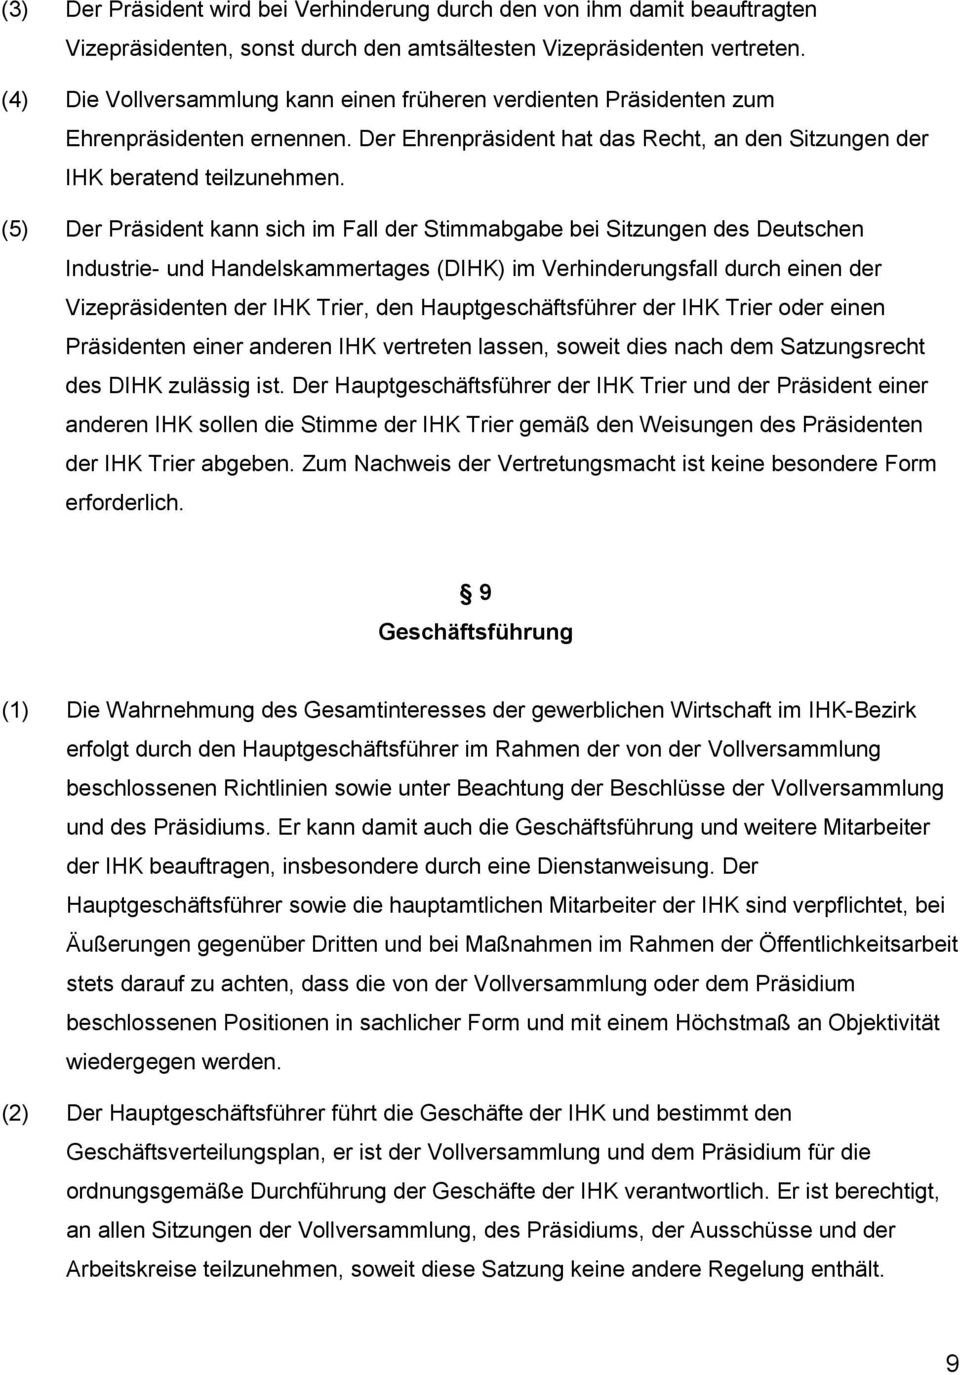 (5) Der Präsident kann sich im Fall der Stimmabgabe bei Sitzungen des Deutschen Industrie- und Handelskammertages (DIHK) im Verhinderungsfall durch einen der Vizepräsidenten der IHK Trier, den